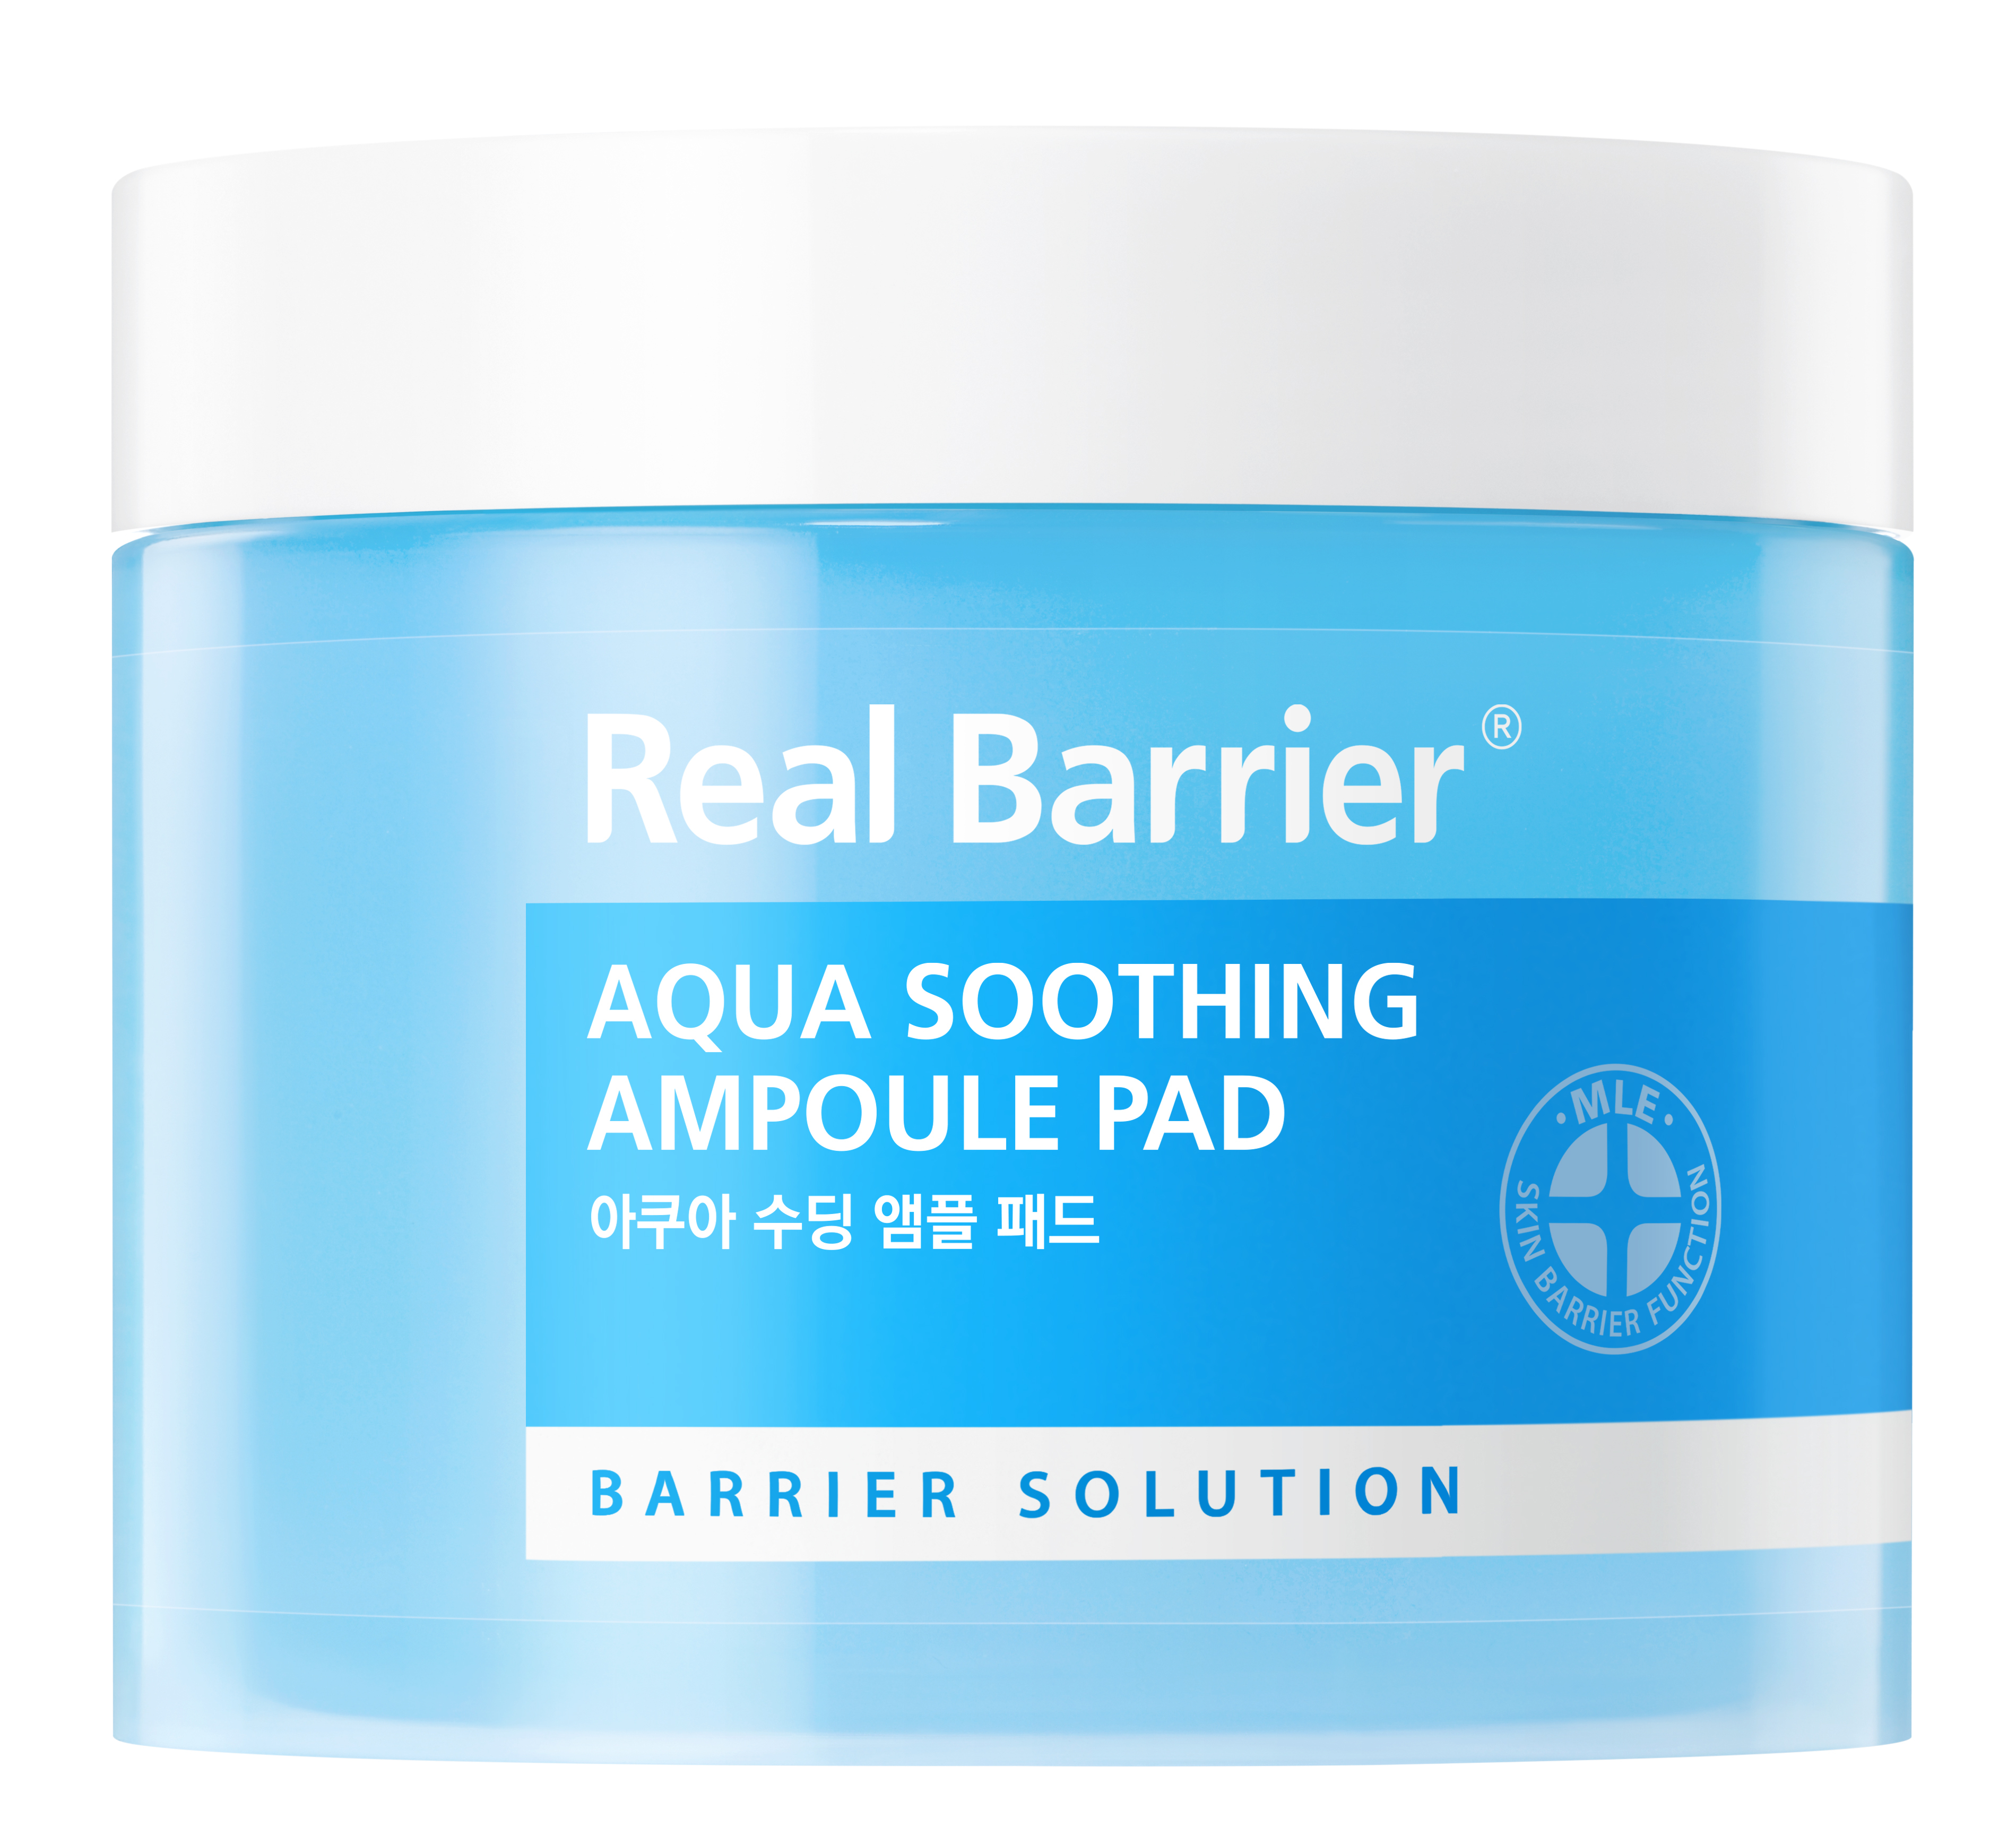 Увлажняющие тонер-пэды для лица Real Barrier Aqua Soothing Ampoule Pad 70 шт 90 мл